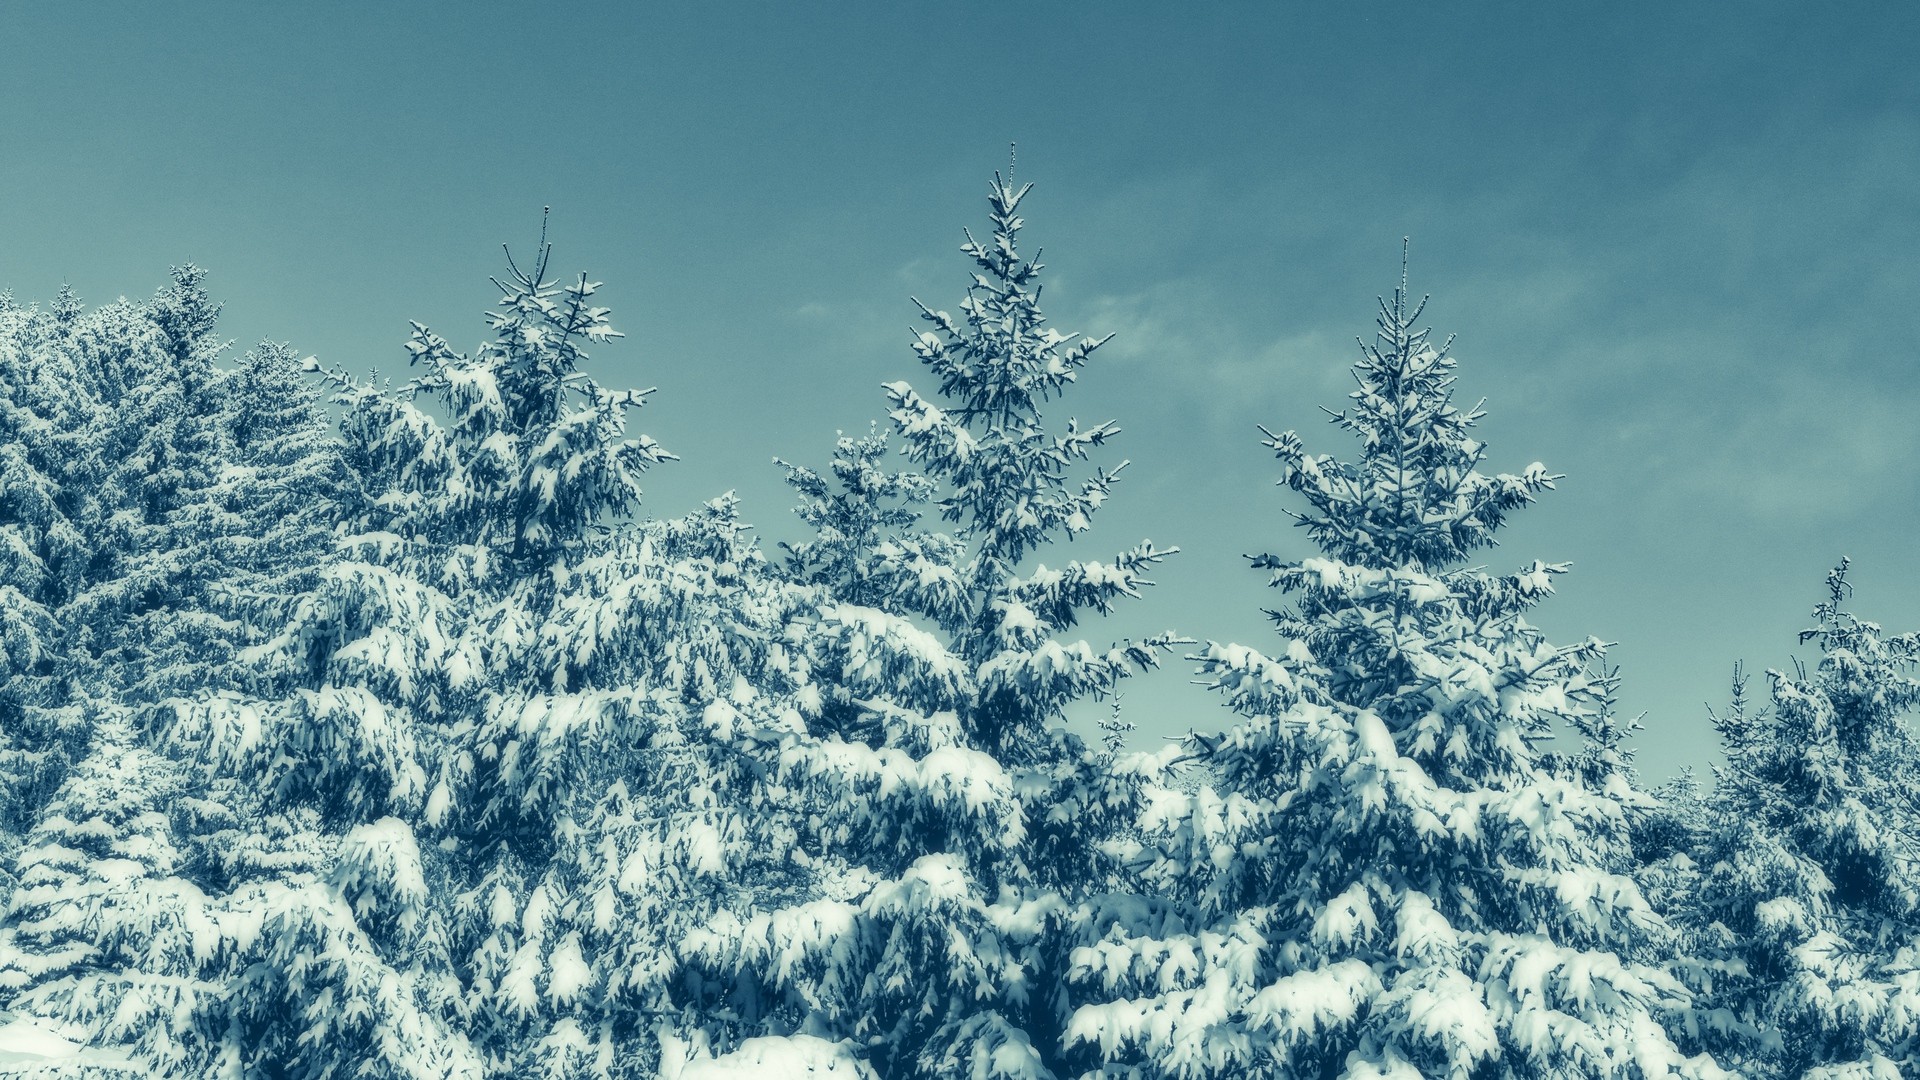 1920x1080 wallpapers: Bäume, Schnee, Winter, schneebedeckt (image)